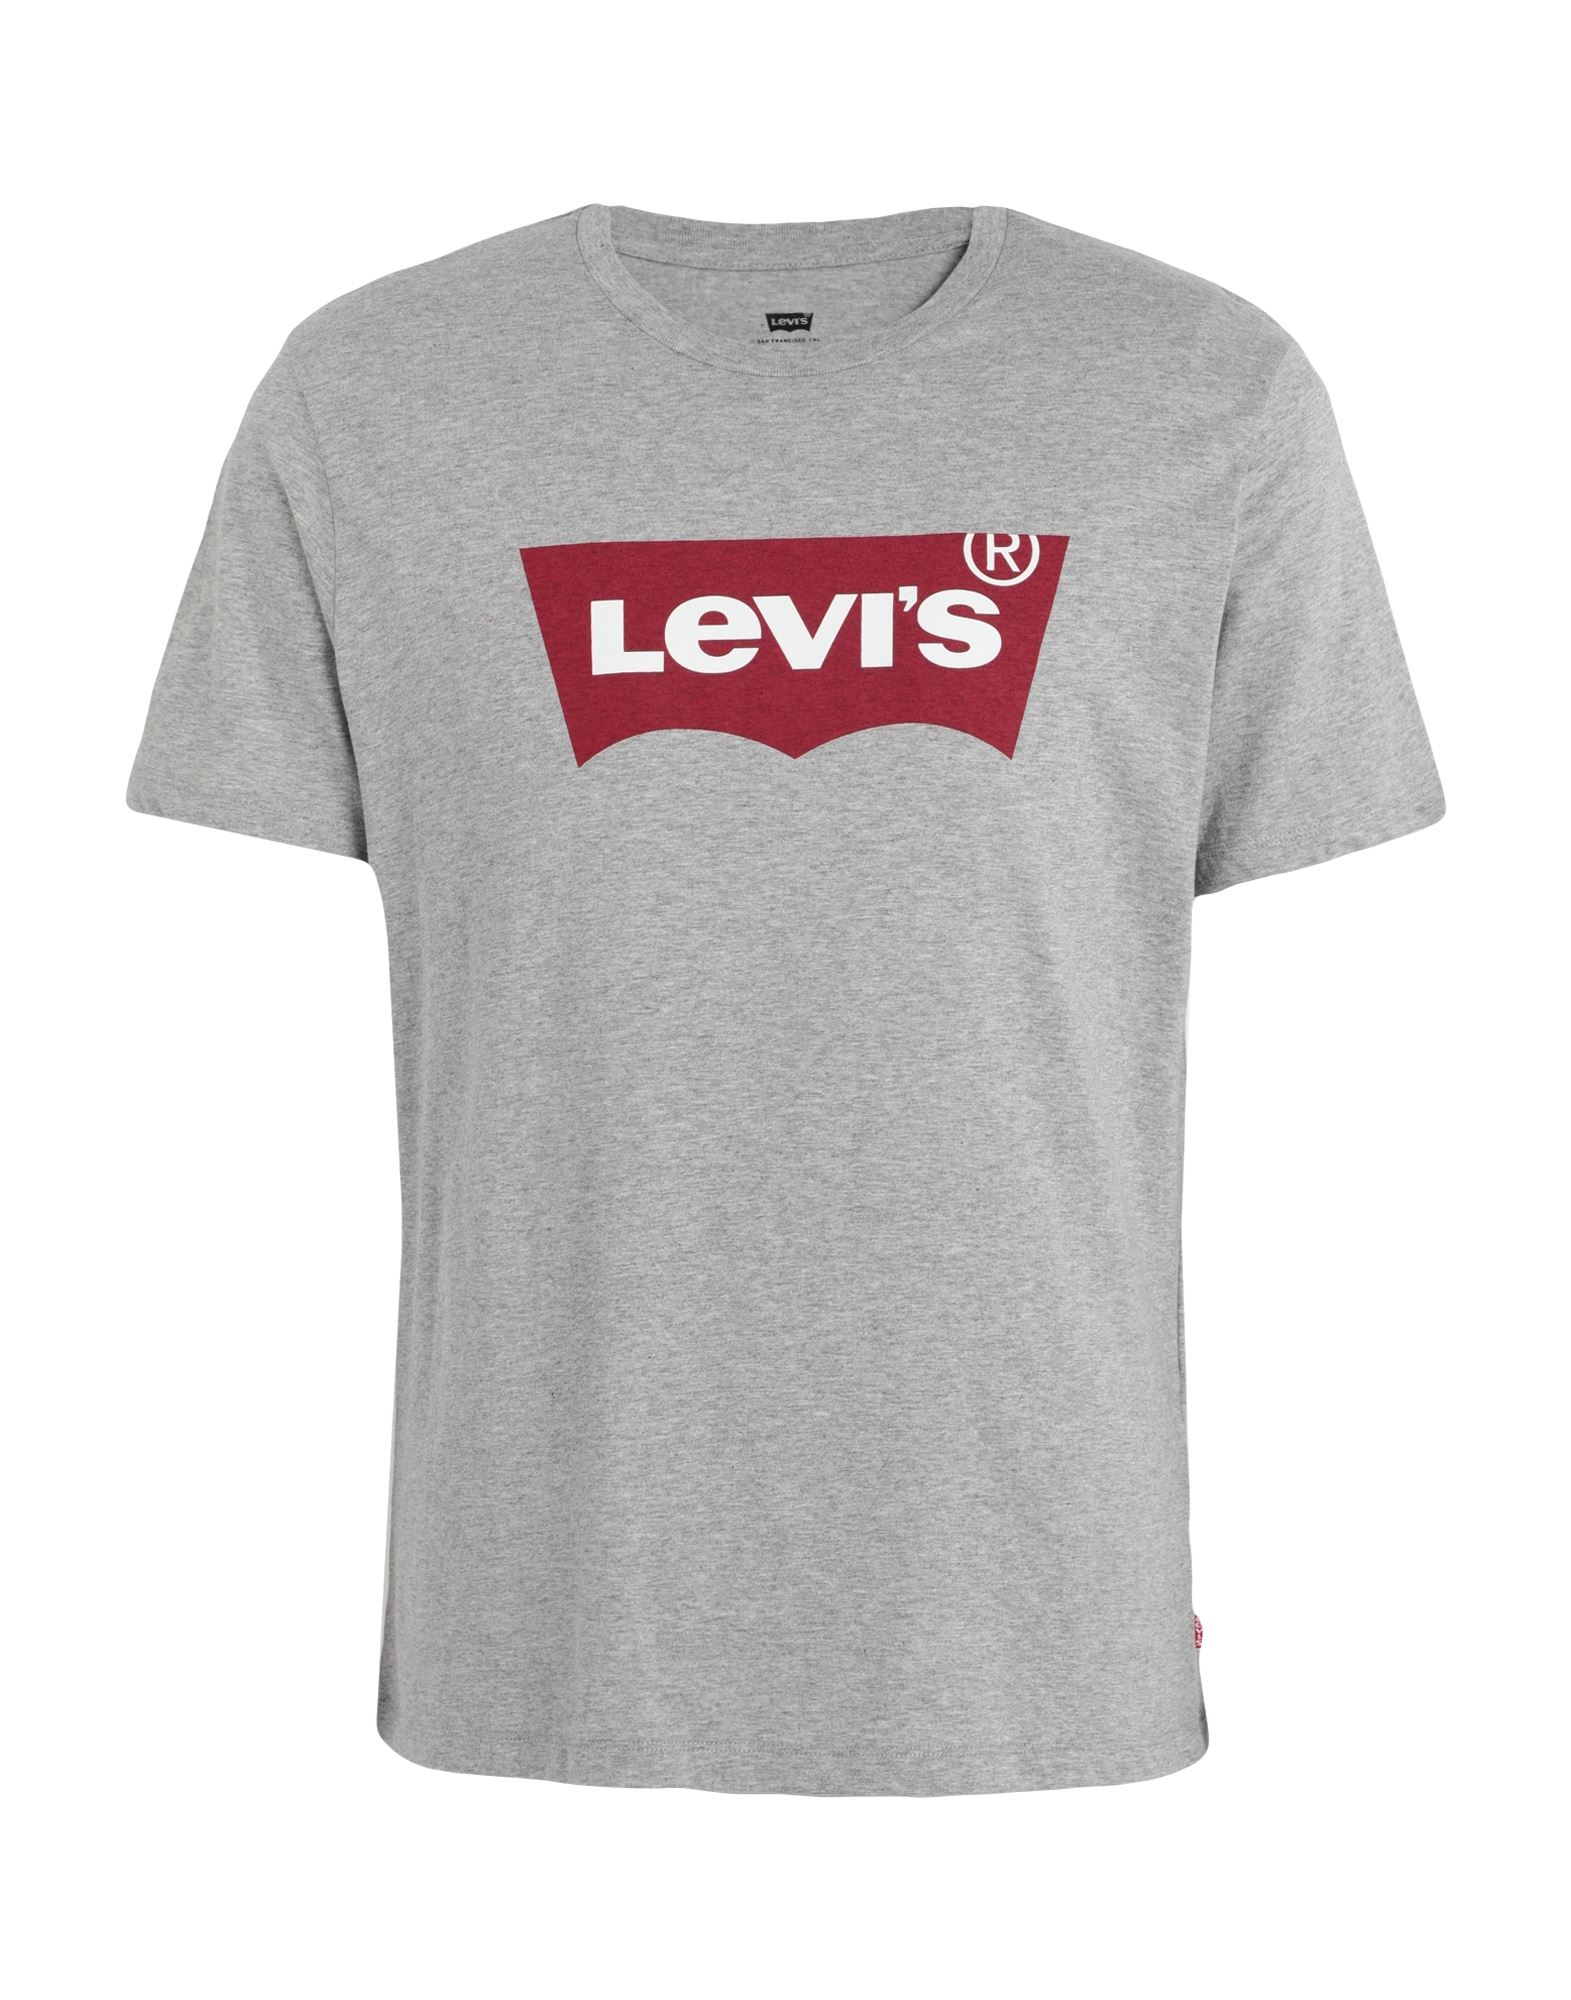 LEVI'S T-shirts Herren Grau von LEVI'S